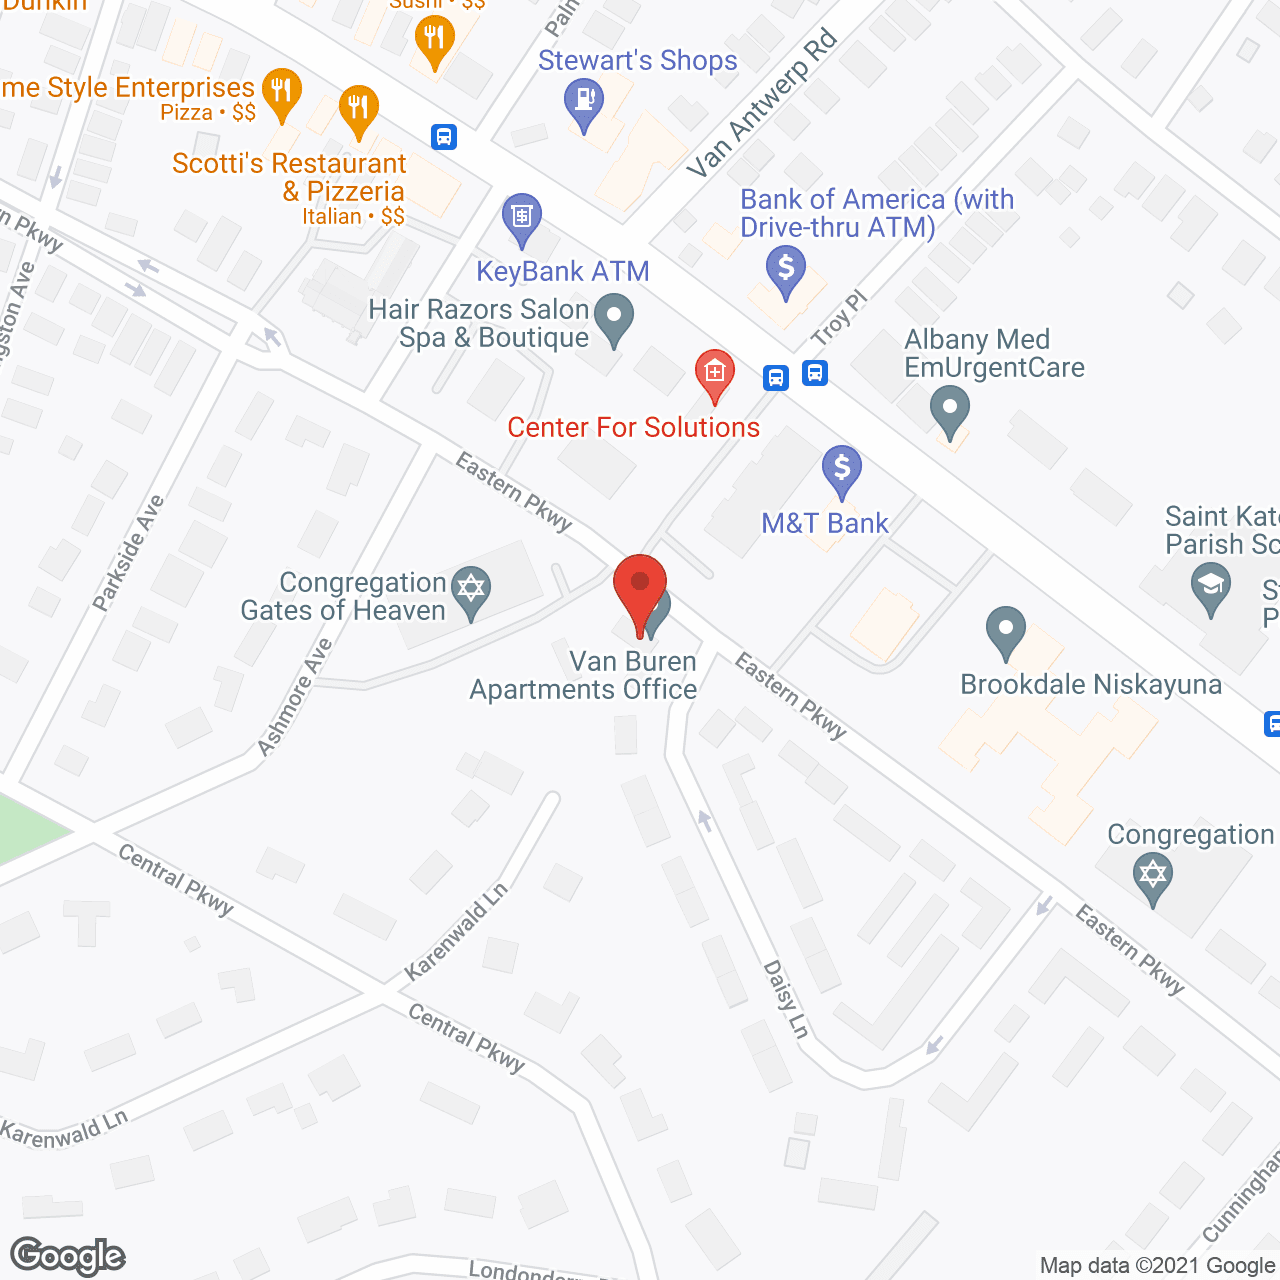 Van Buren Apartments in google map